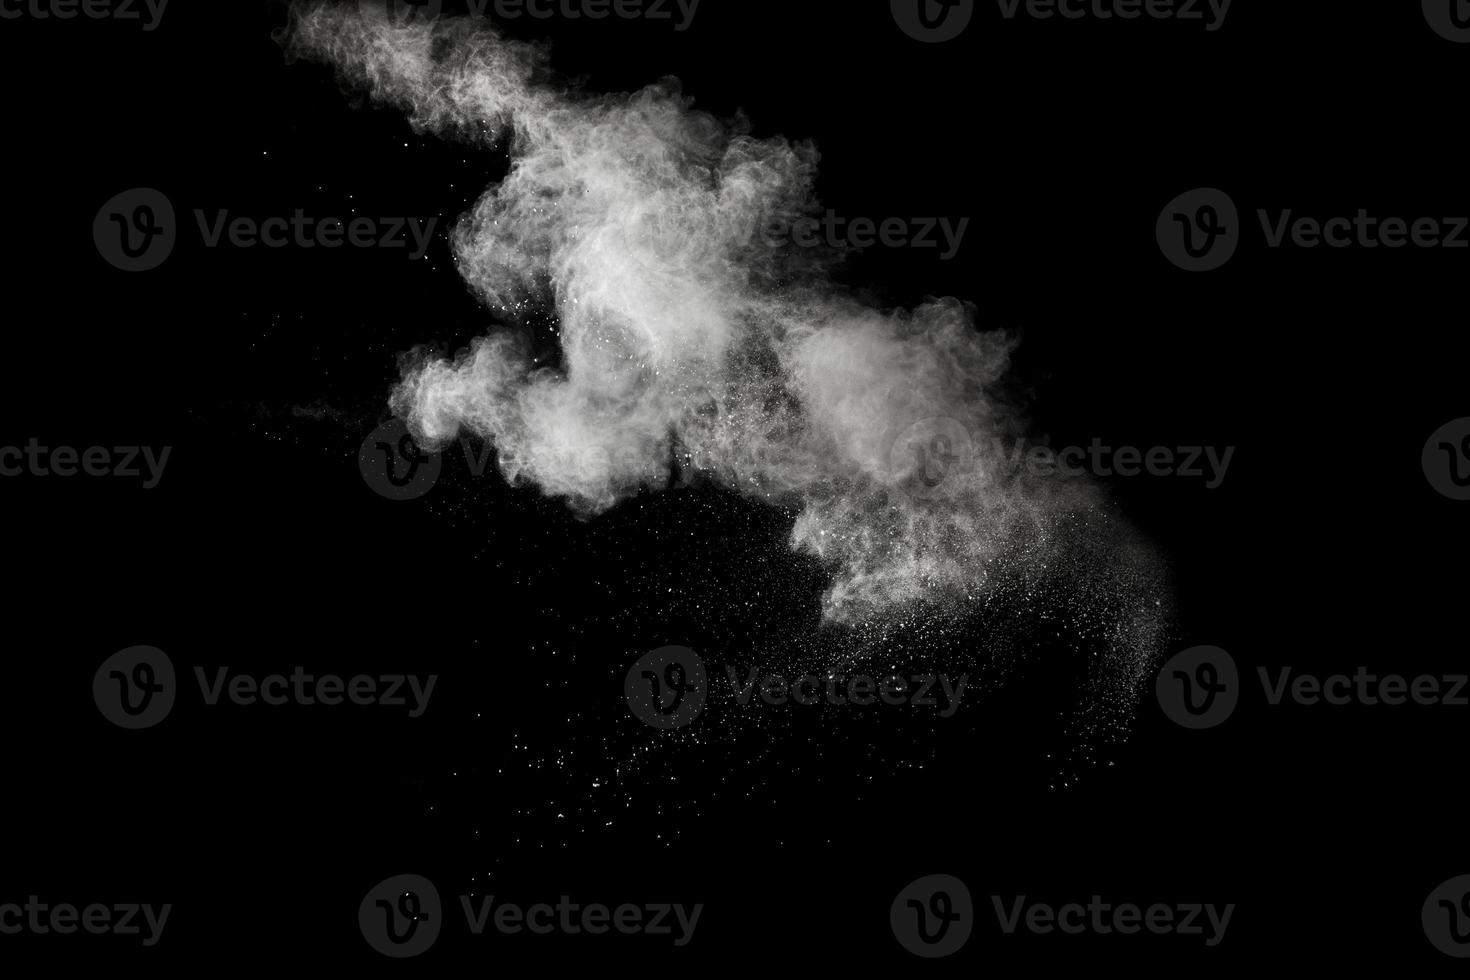 explosión de polvo blanco aislada sobre fondo negro. salpicaduras de partículas de polvo blanco. foto